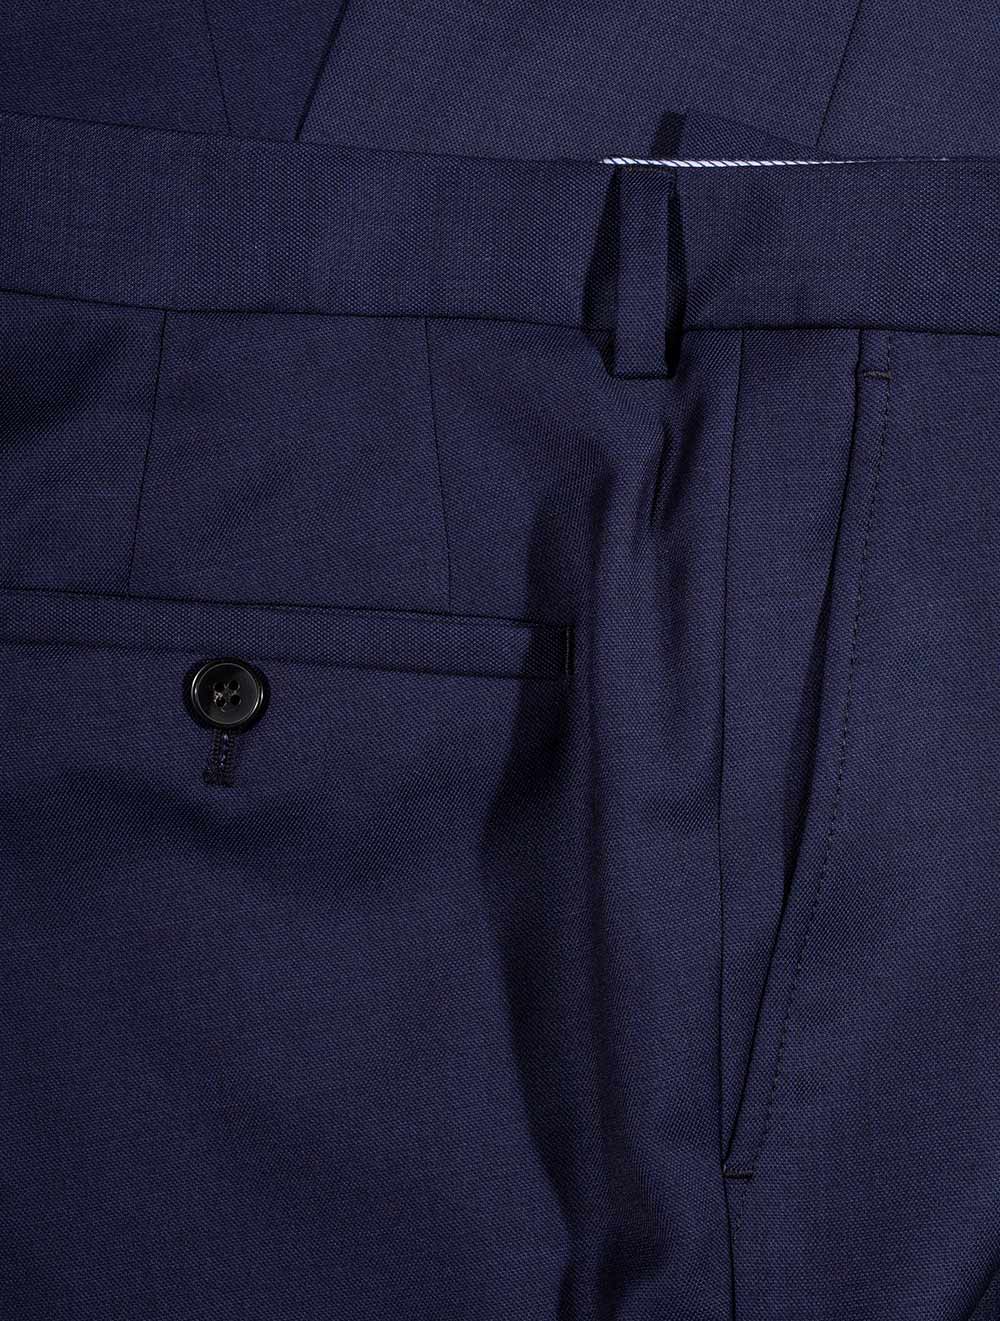 Louis Copeland Zignone Suit Blue 2 Piece 2 Button Notch Lapel Flap Pockets 6